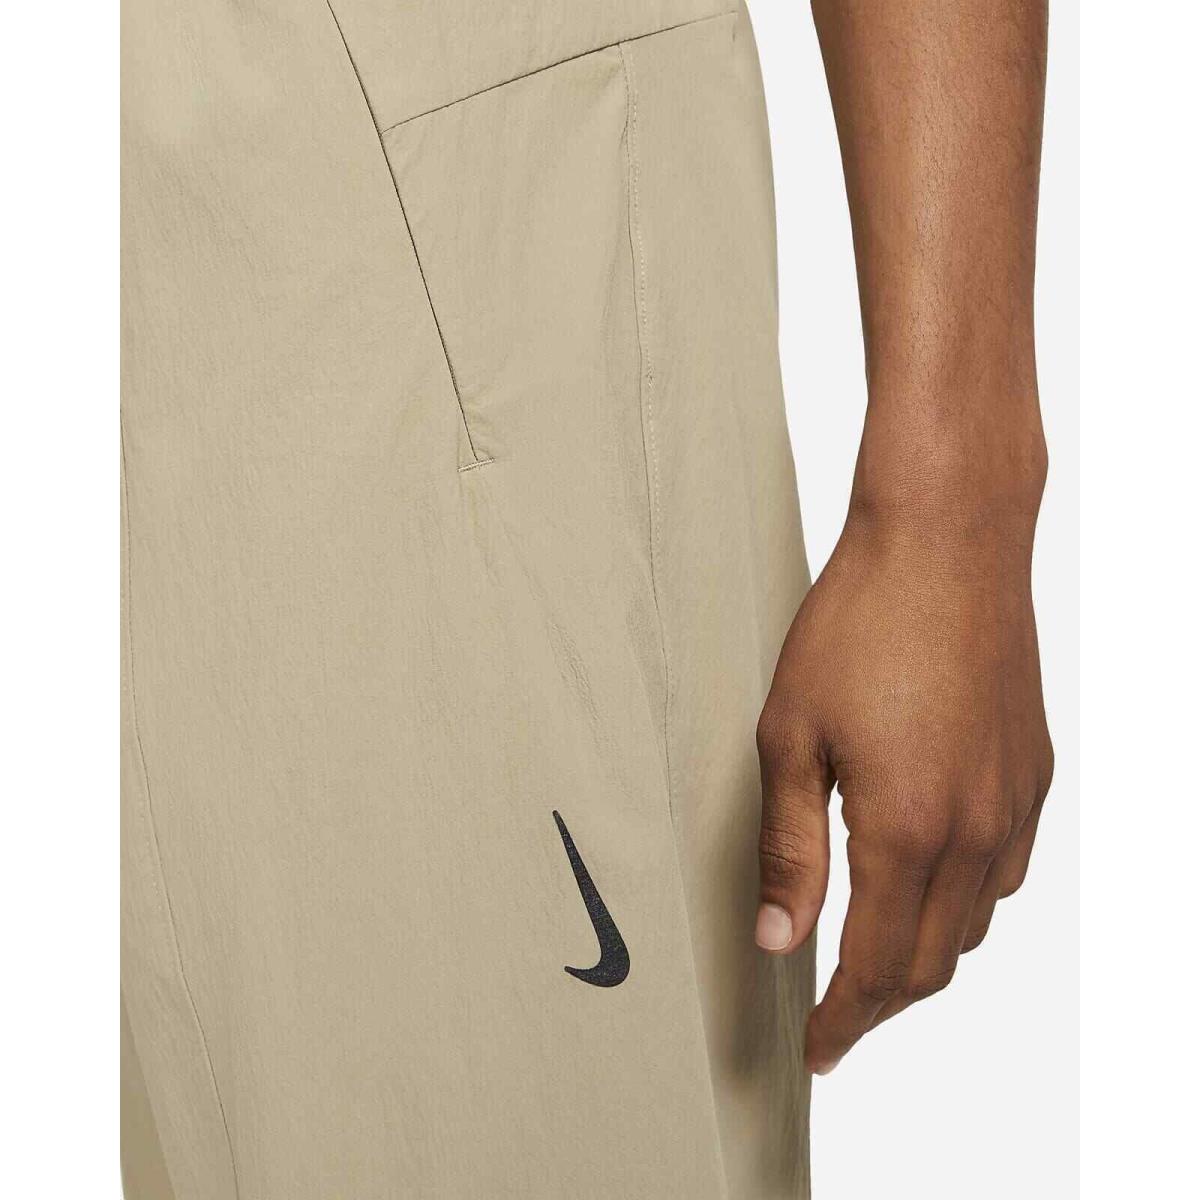 Nike clothing Yoga Dri Fit - Beige 2